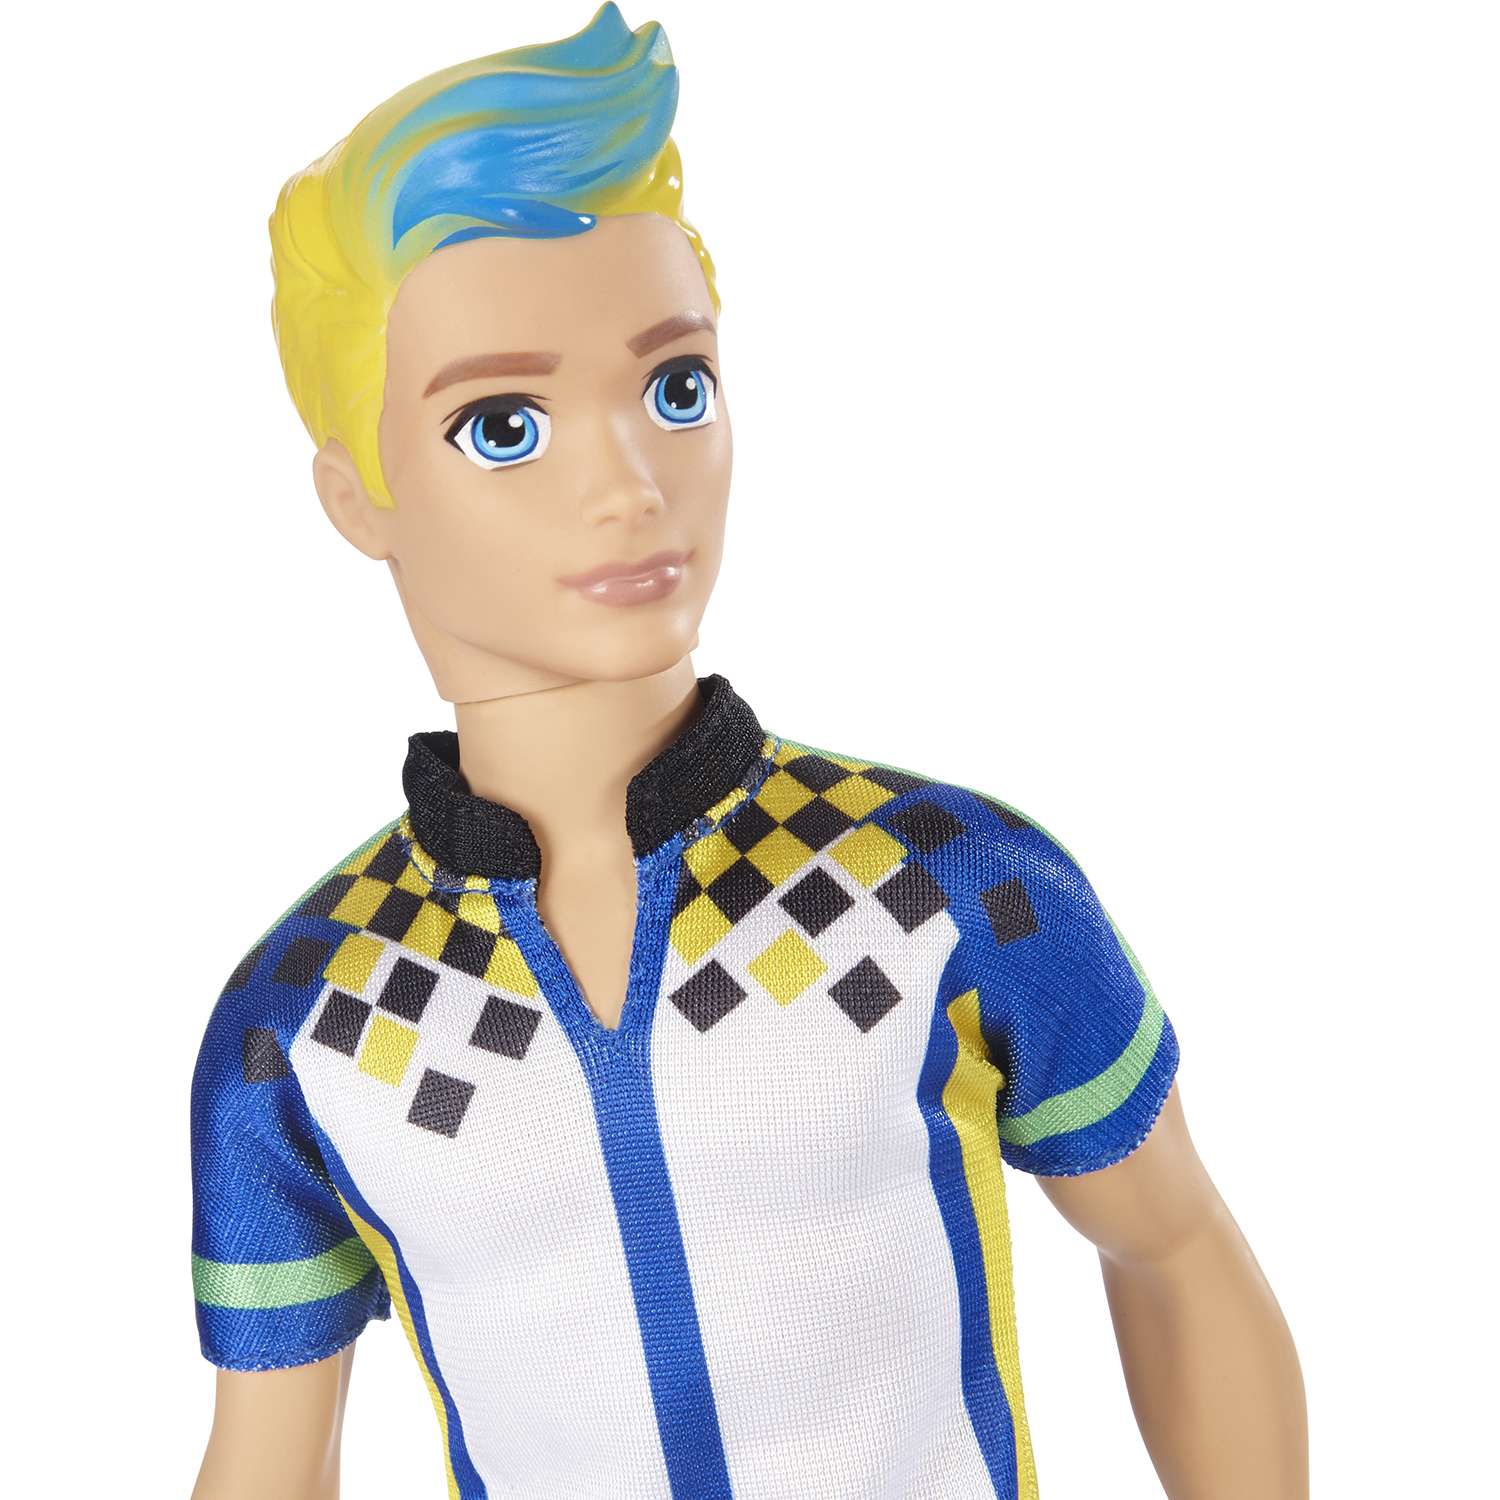 Кукла Barbie Кен из серии Виртуальный мир DTW09 - фото 3